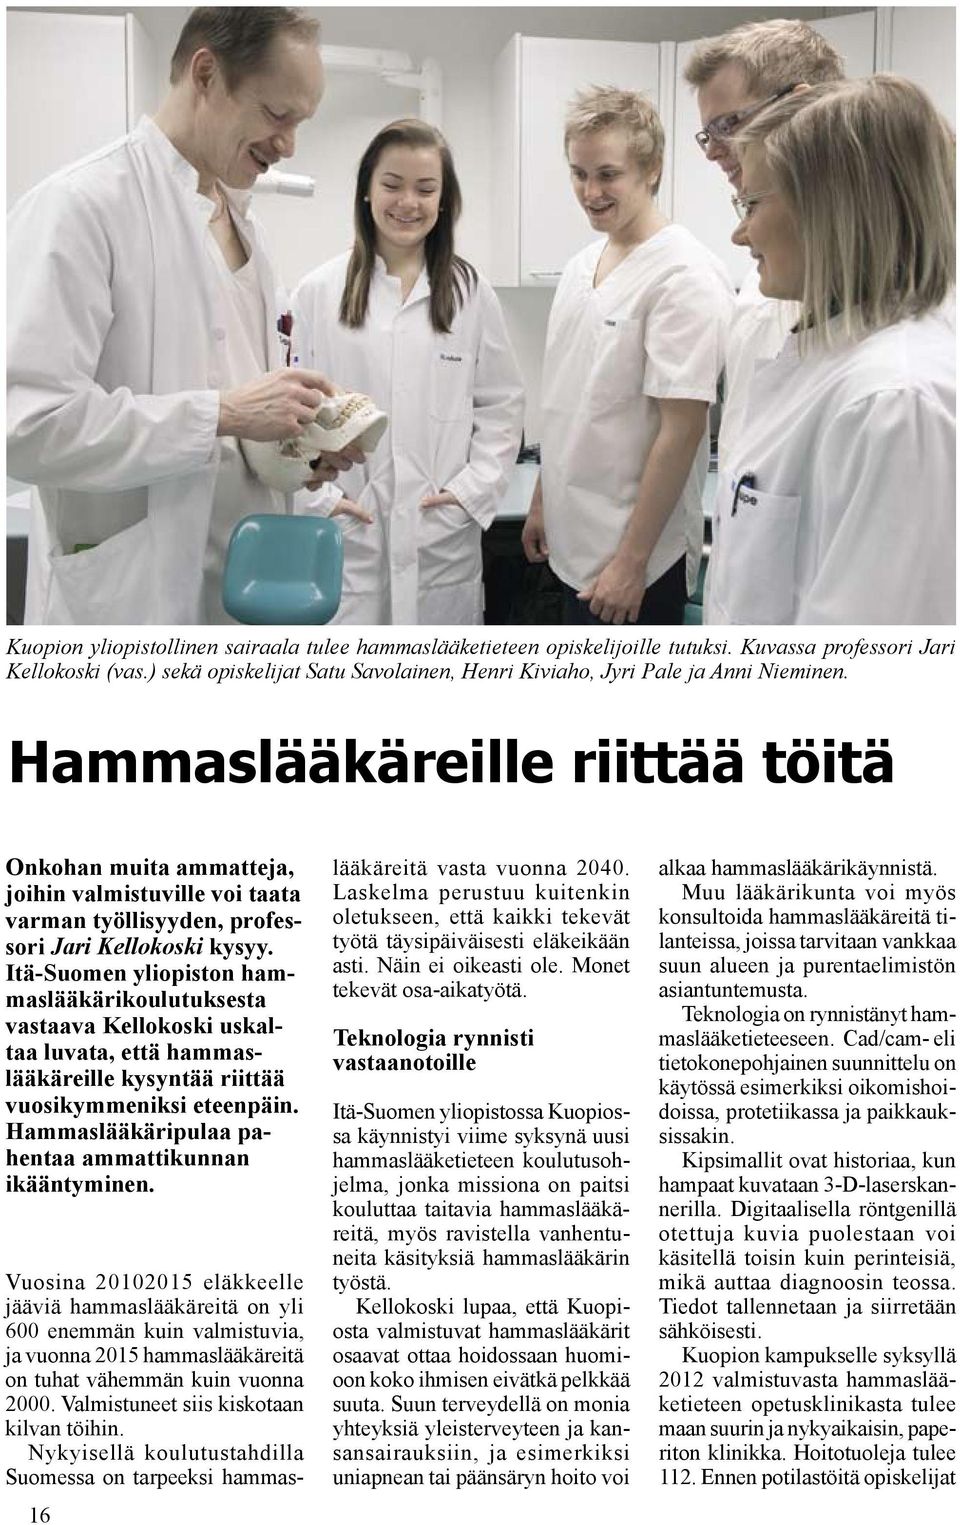 Itä-Suomen yliopiston hammaslääkärikoulutuksesta vastaava Kellokoski uskaltaa luvata, että hammaslääkäreille kysyntää riittää vuosikymmeniksi eteenpäin.